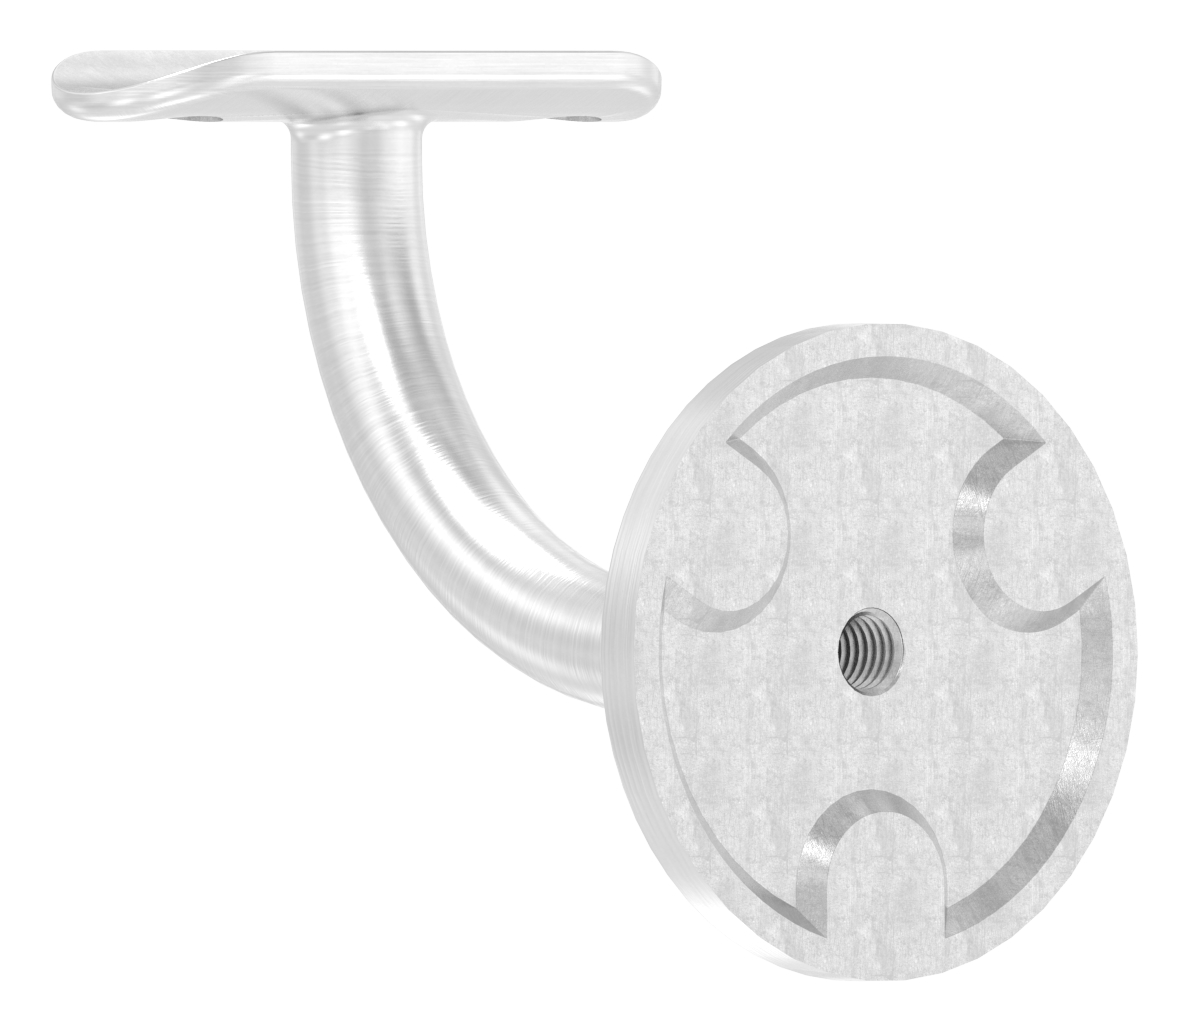 Handlaufhalter mit Handlaufanschlussplatte 42,4mm, (Ronde und Bügel verschweißt), V2A